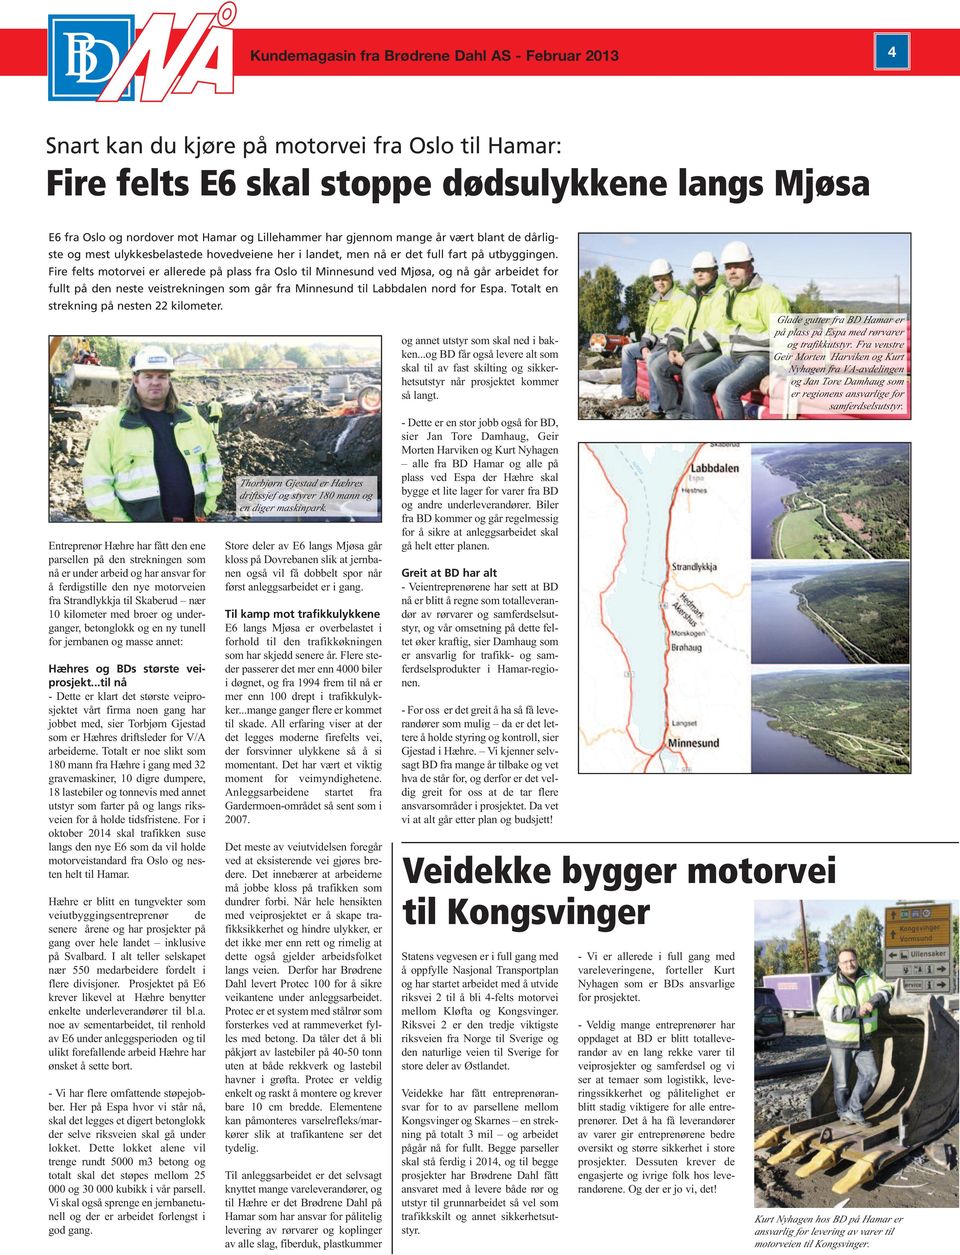 Fire felts motorvei er allerede på plass fra Oslo til Minnesund ved Mjøsa, og nå går arbeidet for fullt på den neste veistrekningen som går fra Minnesund til Labbdalen nord for Espa.